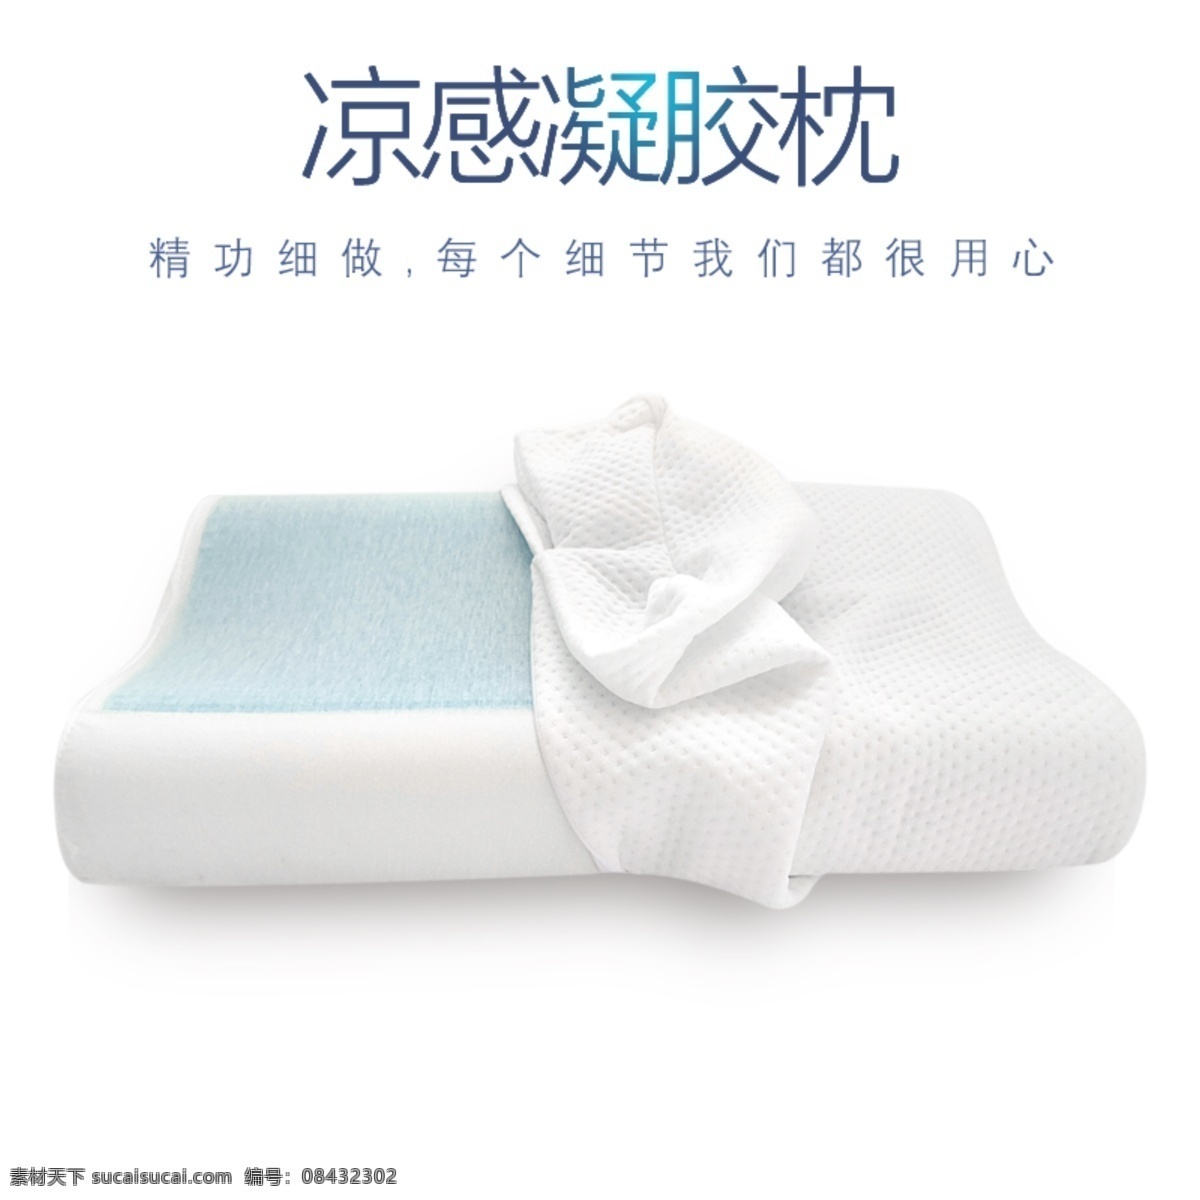 凝胶枕分层图 凝胶枕 分层素材 内部结构 记忆棉枕头 凝胶片枕头 透明图 淘宝界面设计